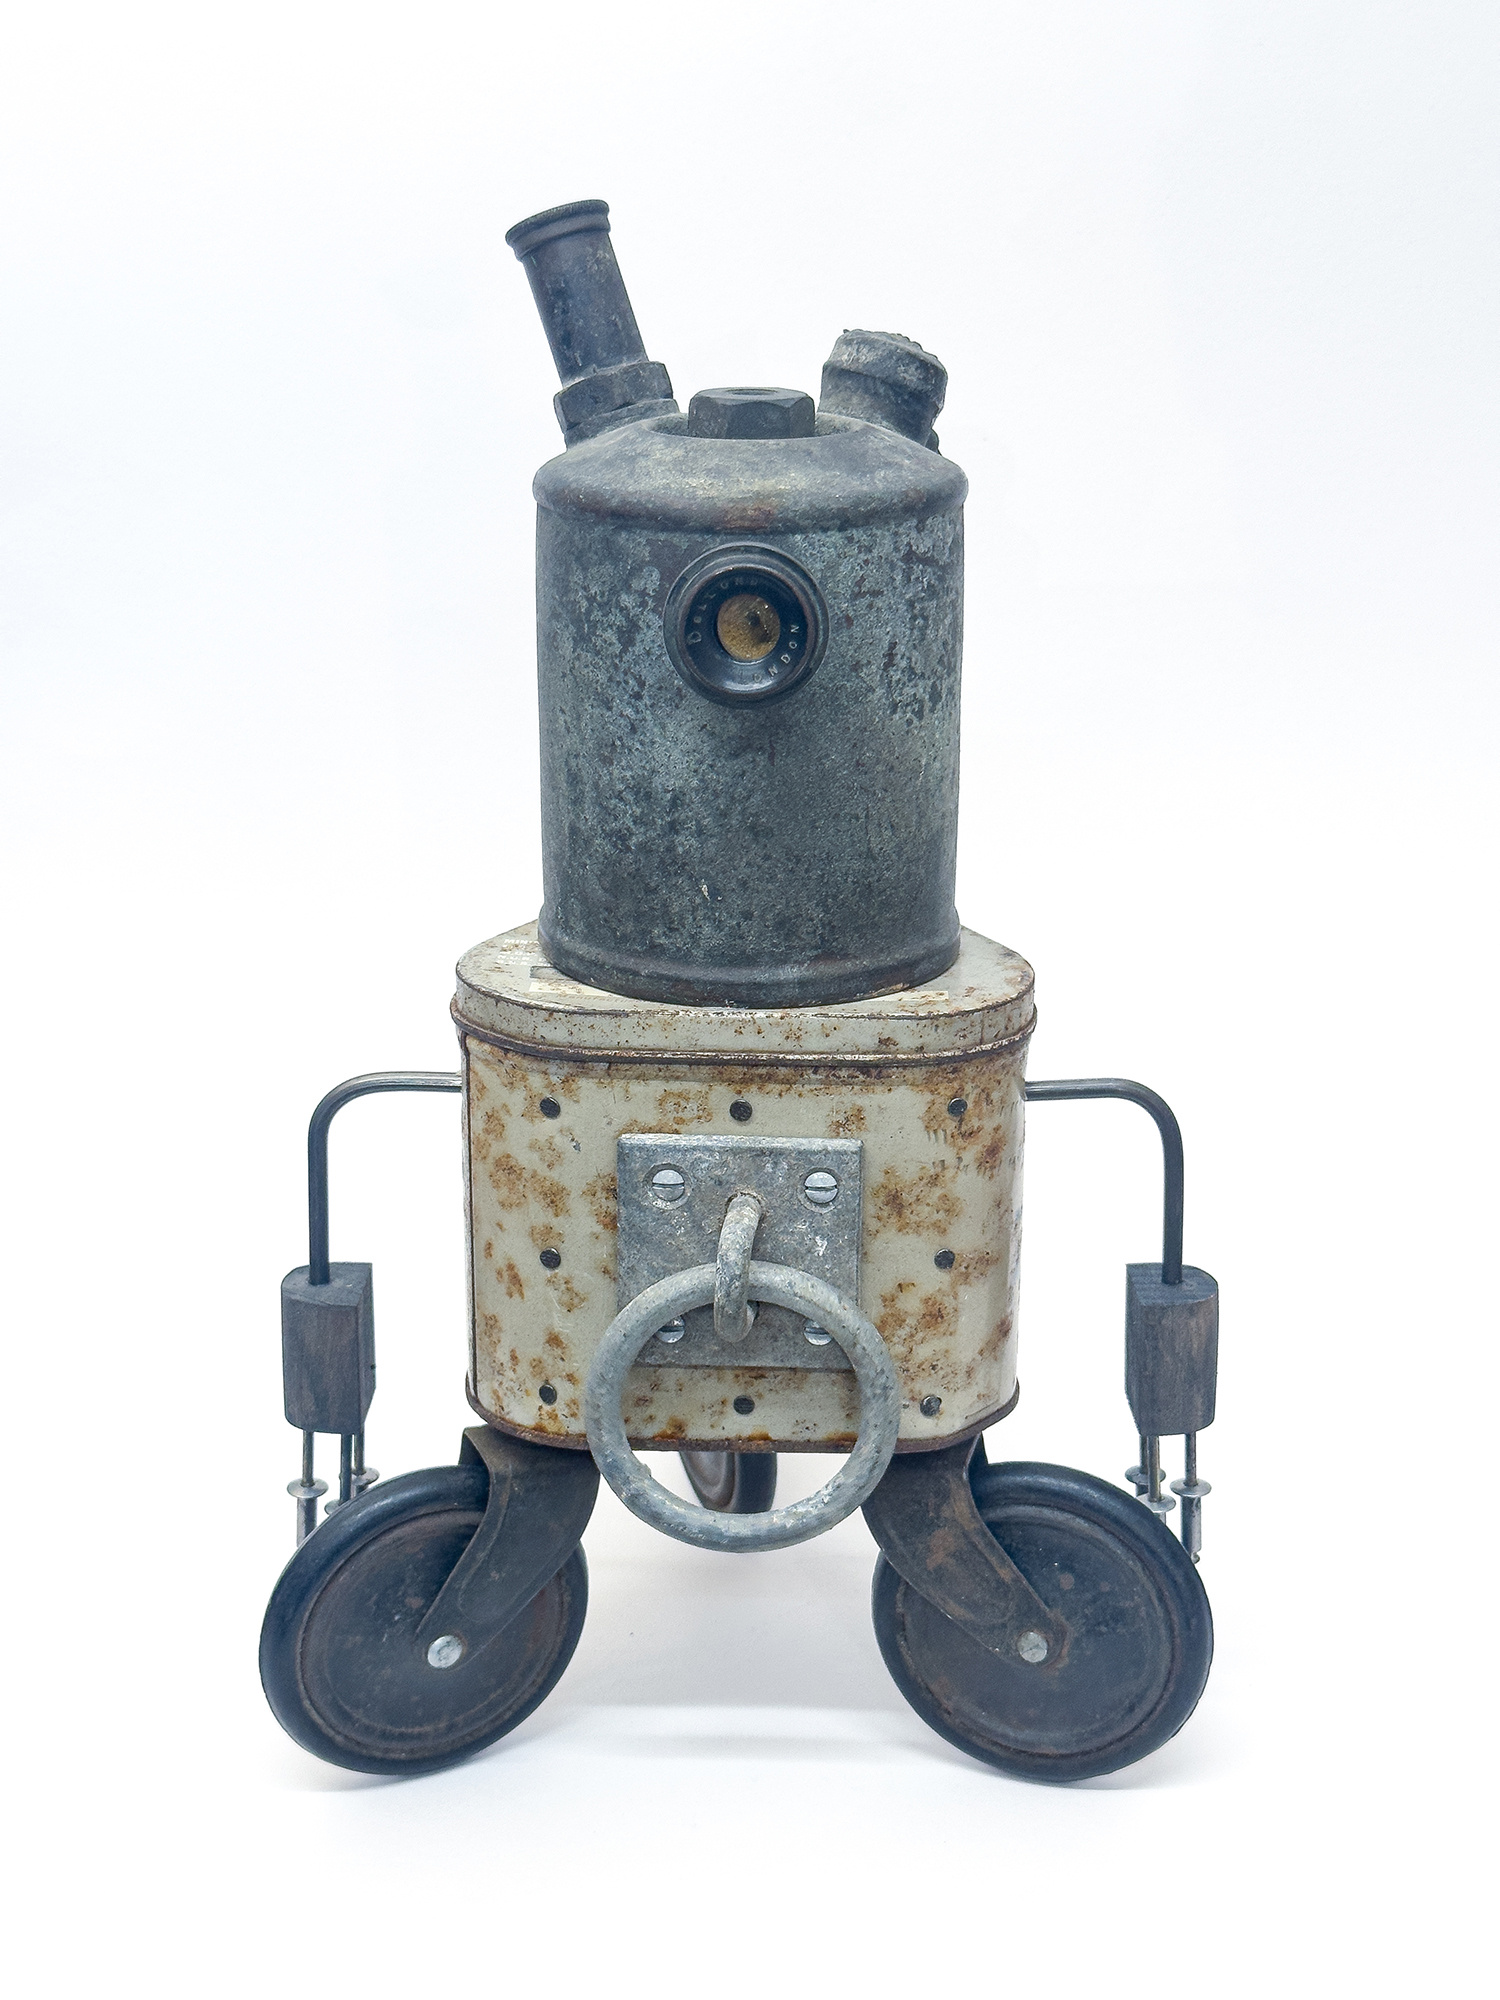 Gen One Robot -'Wheelie' by Matt Brown